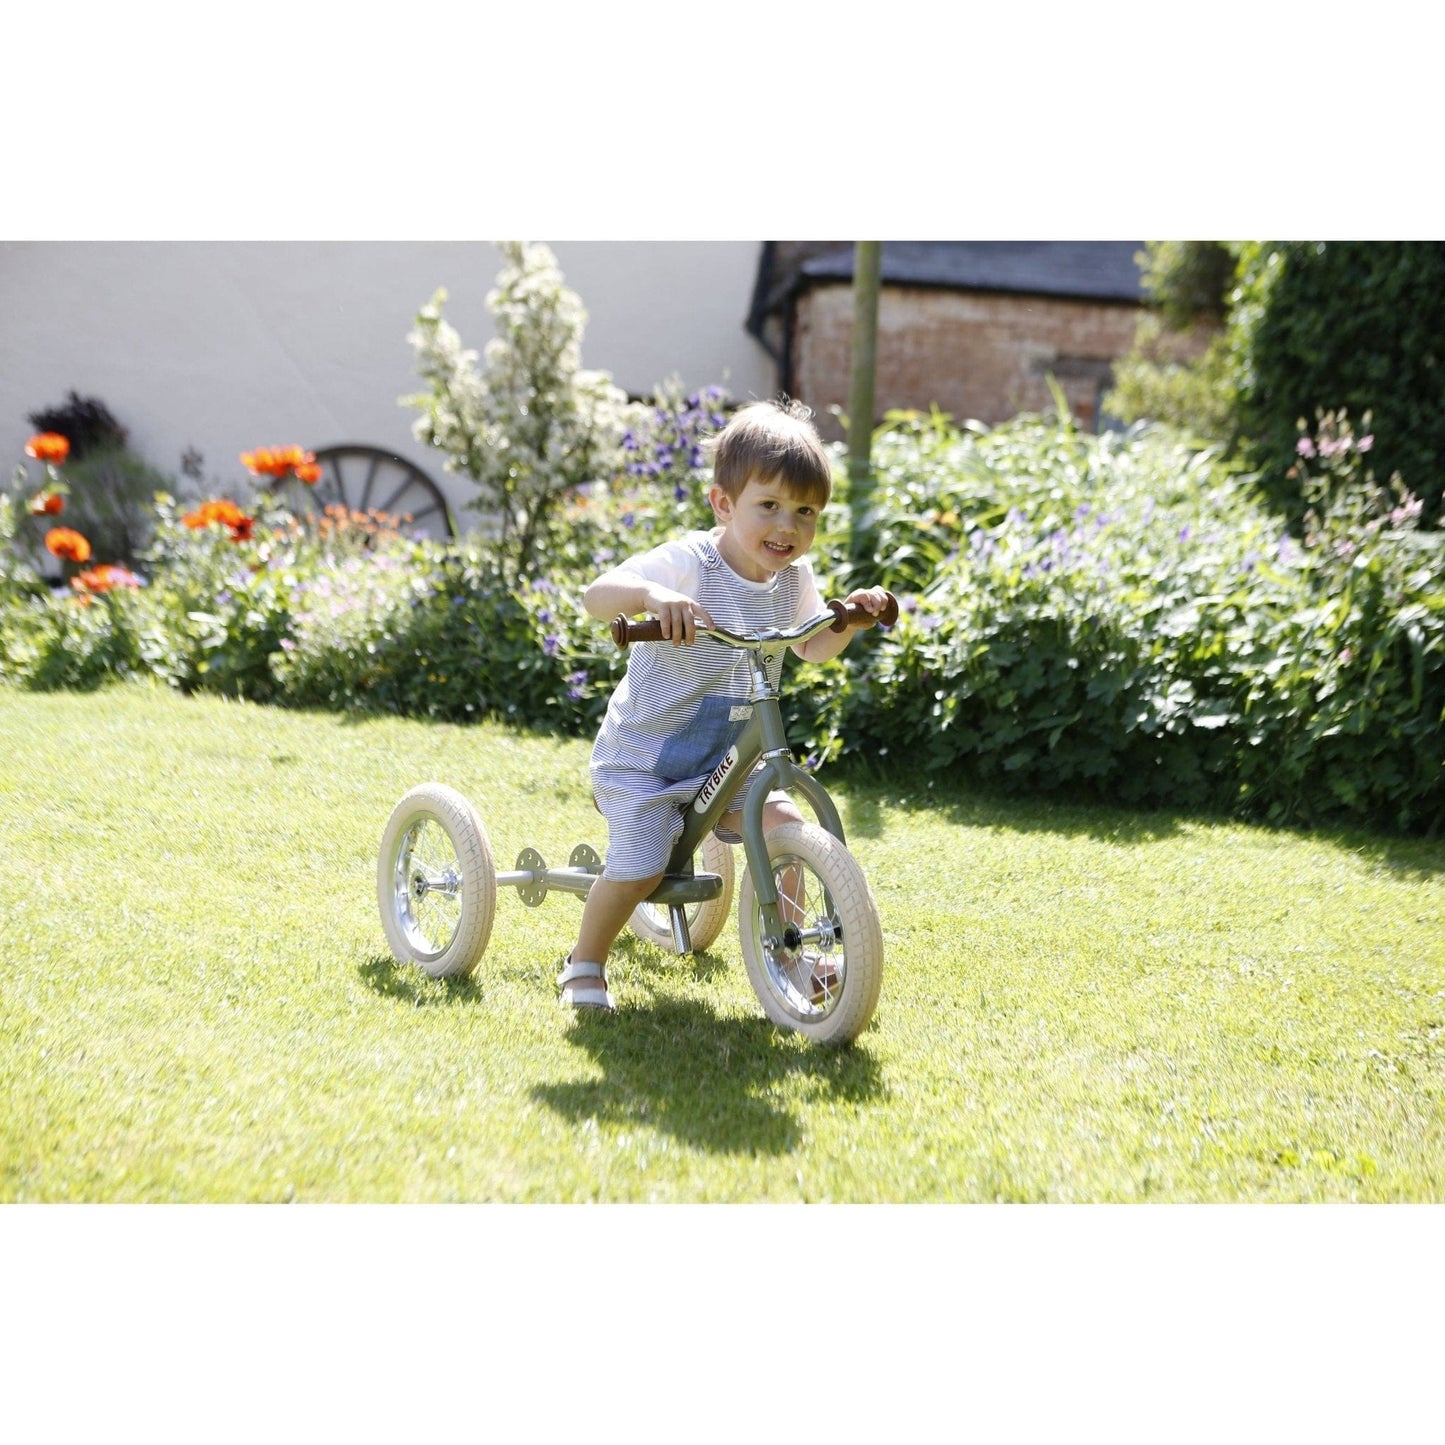 smiling boy riding TryBike - Steel 2 in 1 Balance Trike Bike - Vintage Green in garden